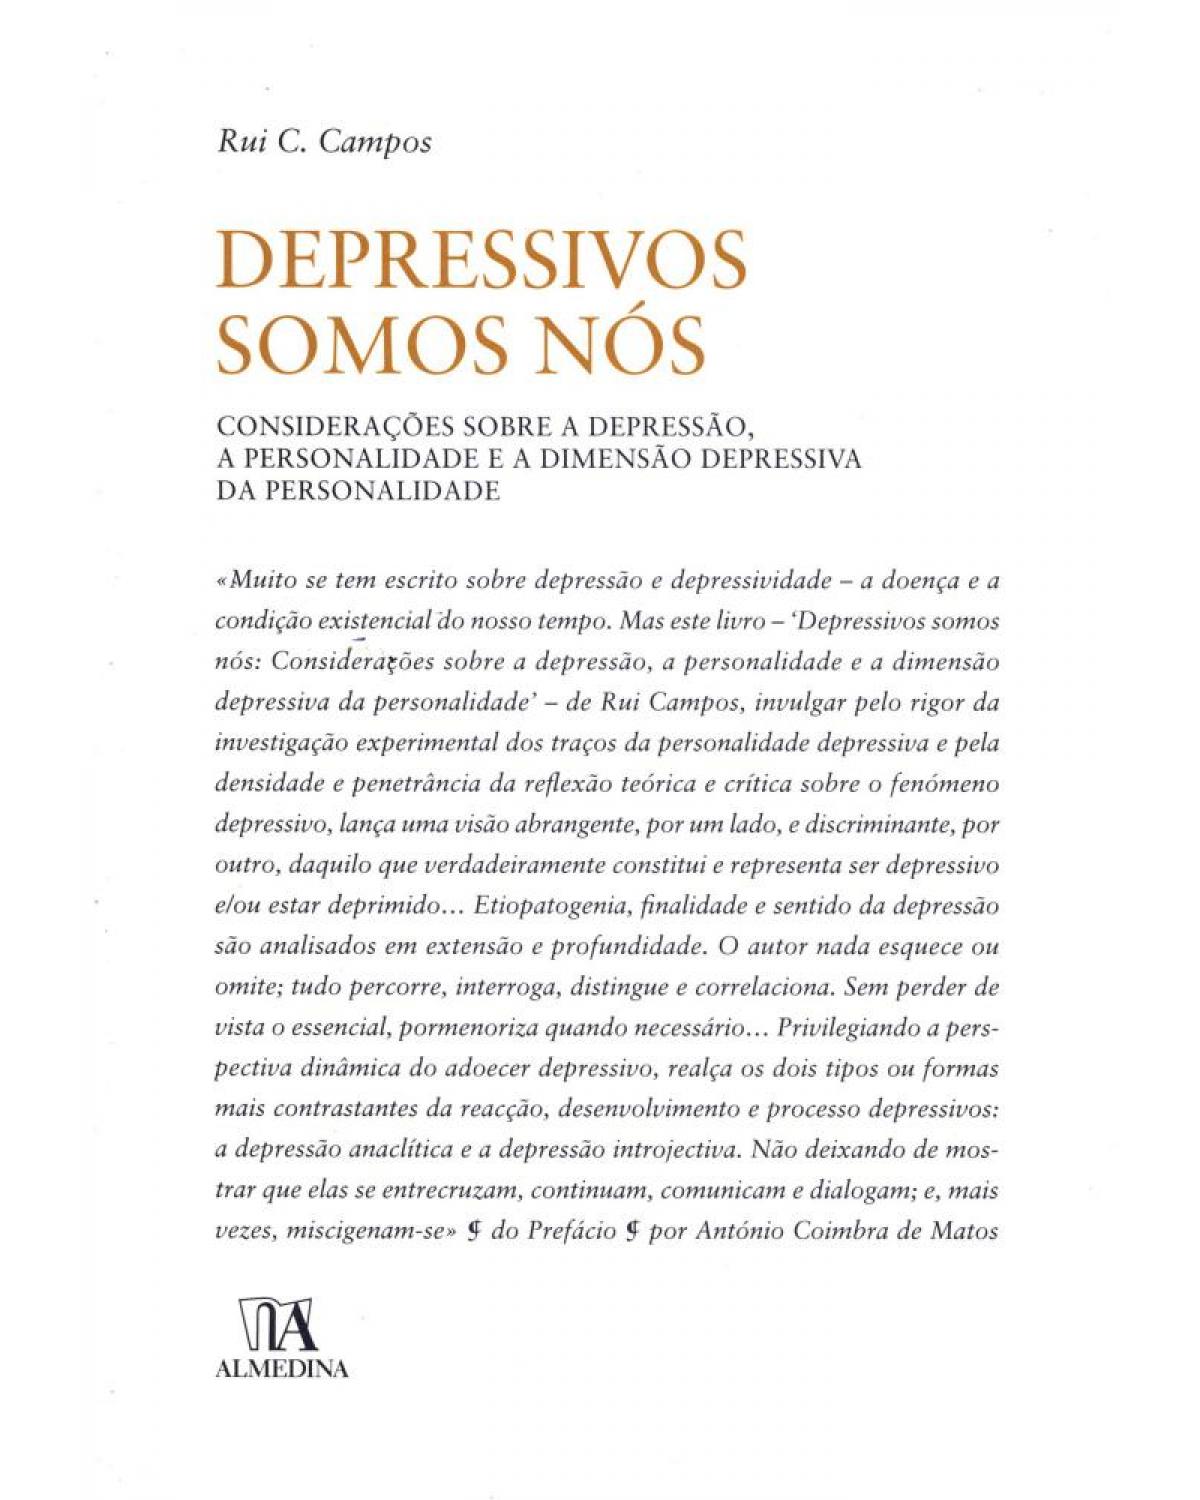 Depressivos somos nós - considerações sobre a depressão, a personalidade e a dimensão depressiva da personalidade - 1ª Edição | 2009